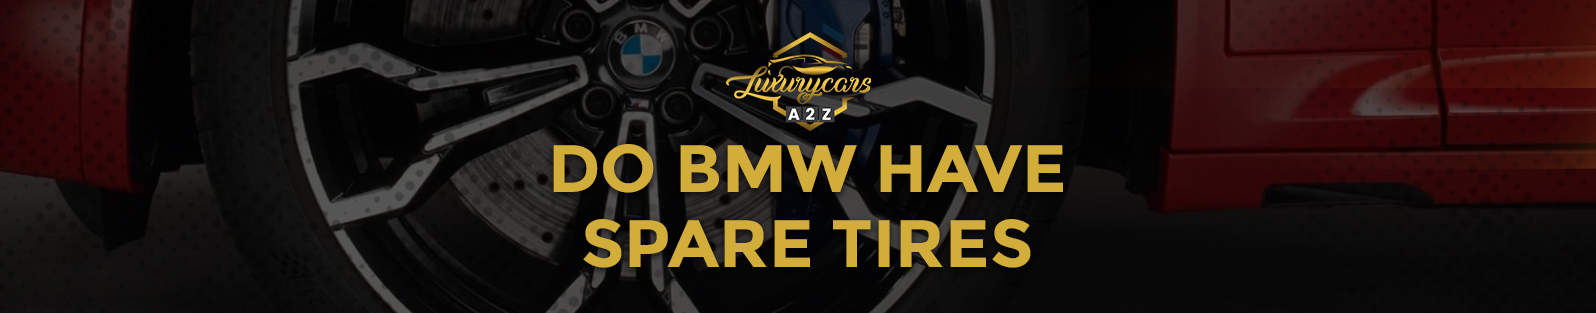 Les BMW ont-elles des pneus de rechange ?